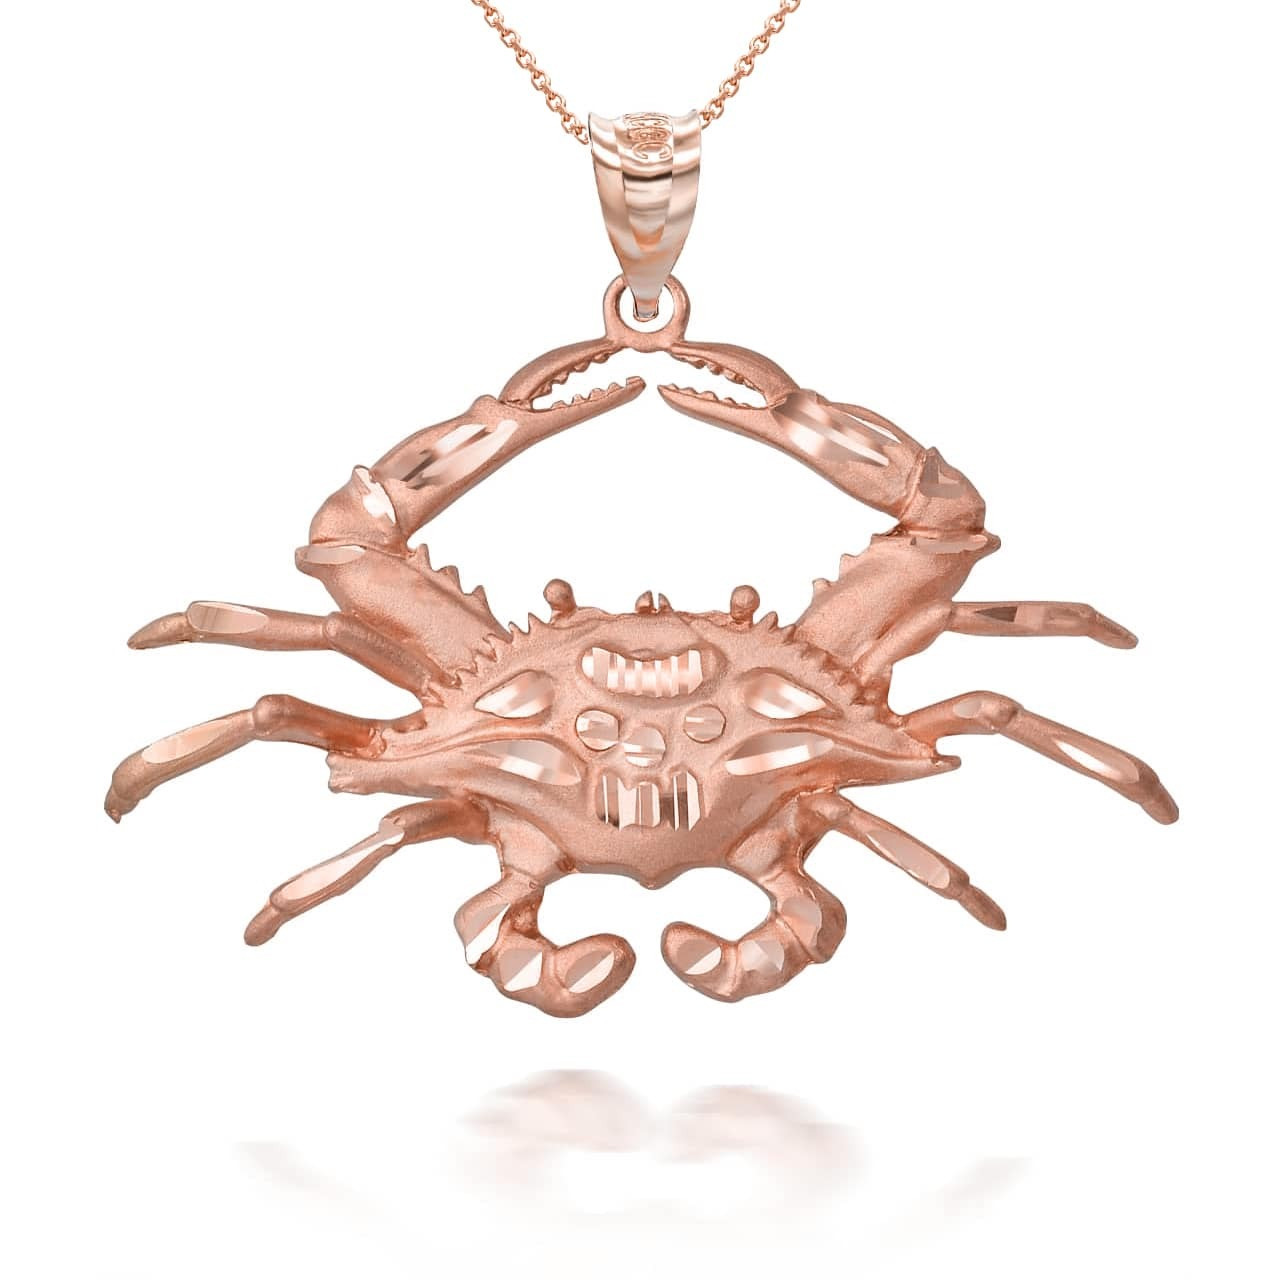 Horseshoe Crab Necklace | Horseshoe Crab Pendant | Cape Clasp